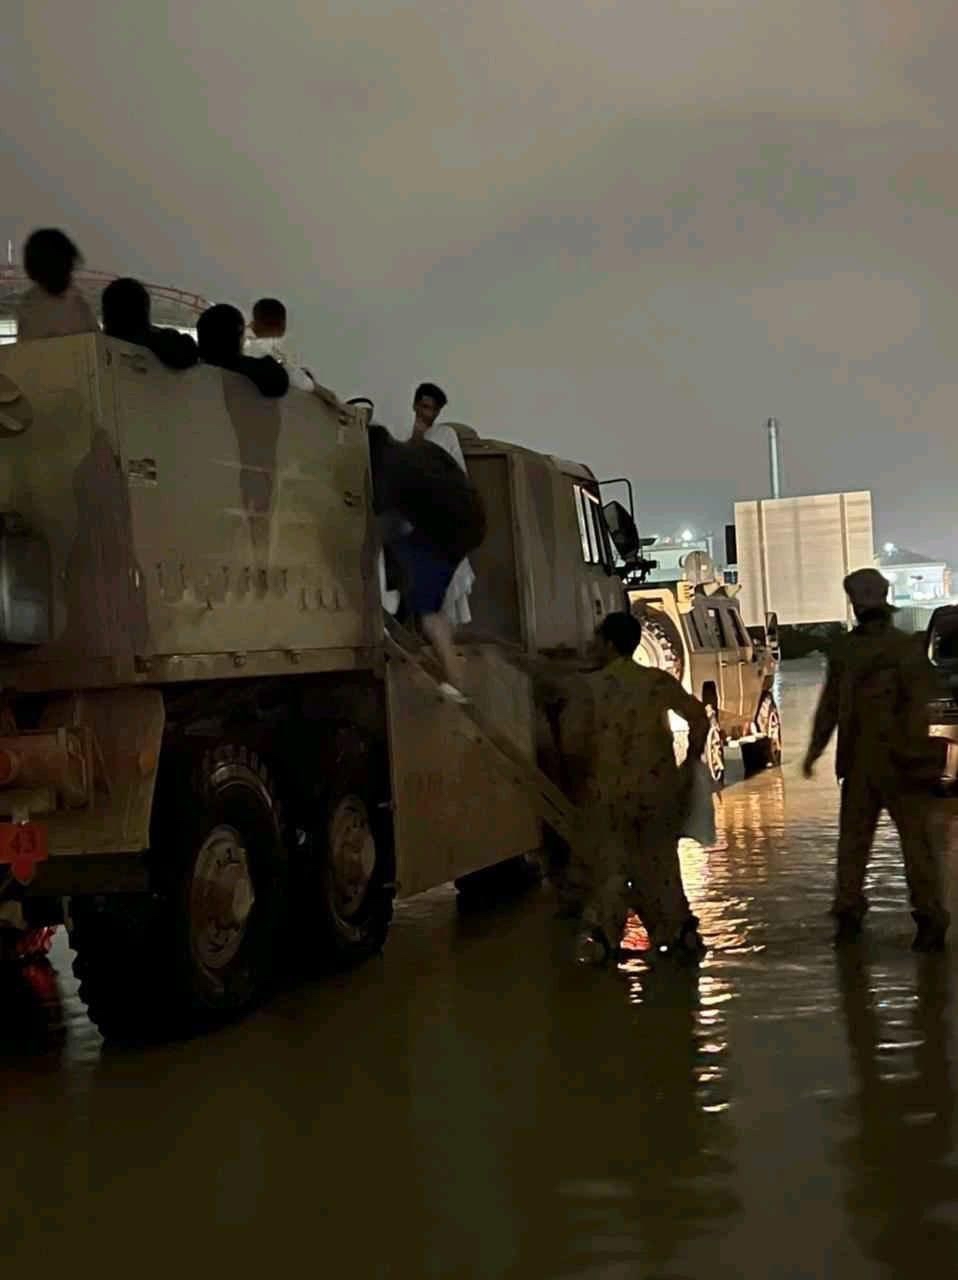 مشهد مخيف سيل جاريف يسحق أحد الأسواق في الإمارت وإغلاق الطرقات في قطر من الفيضانات -فيديو